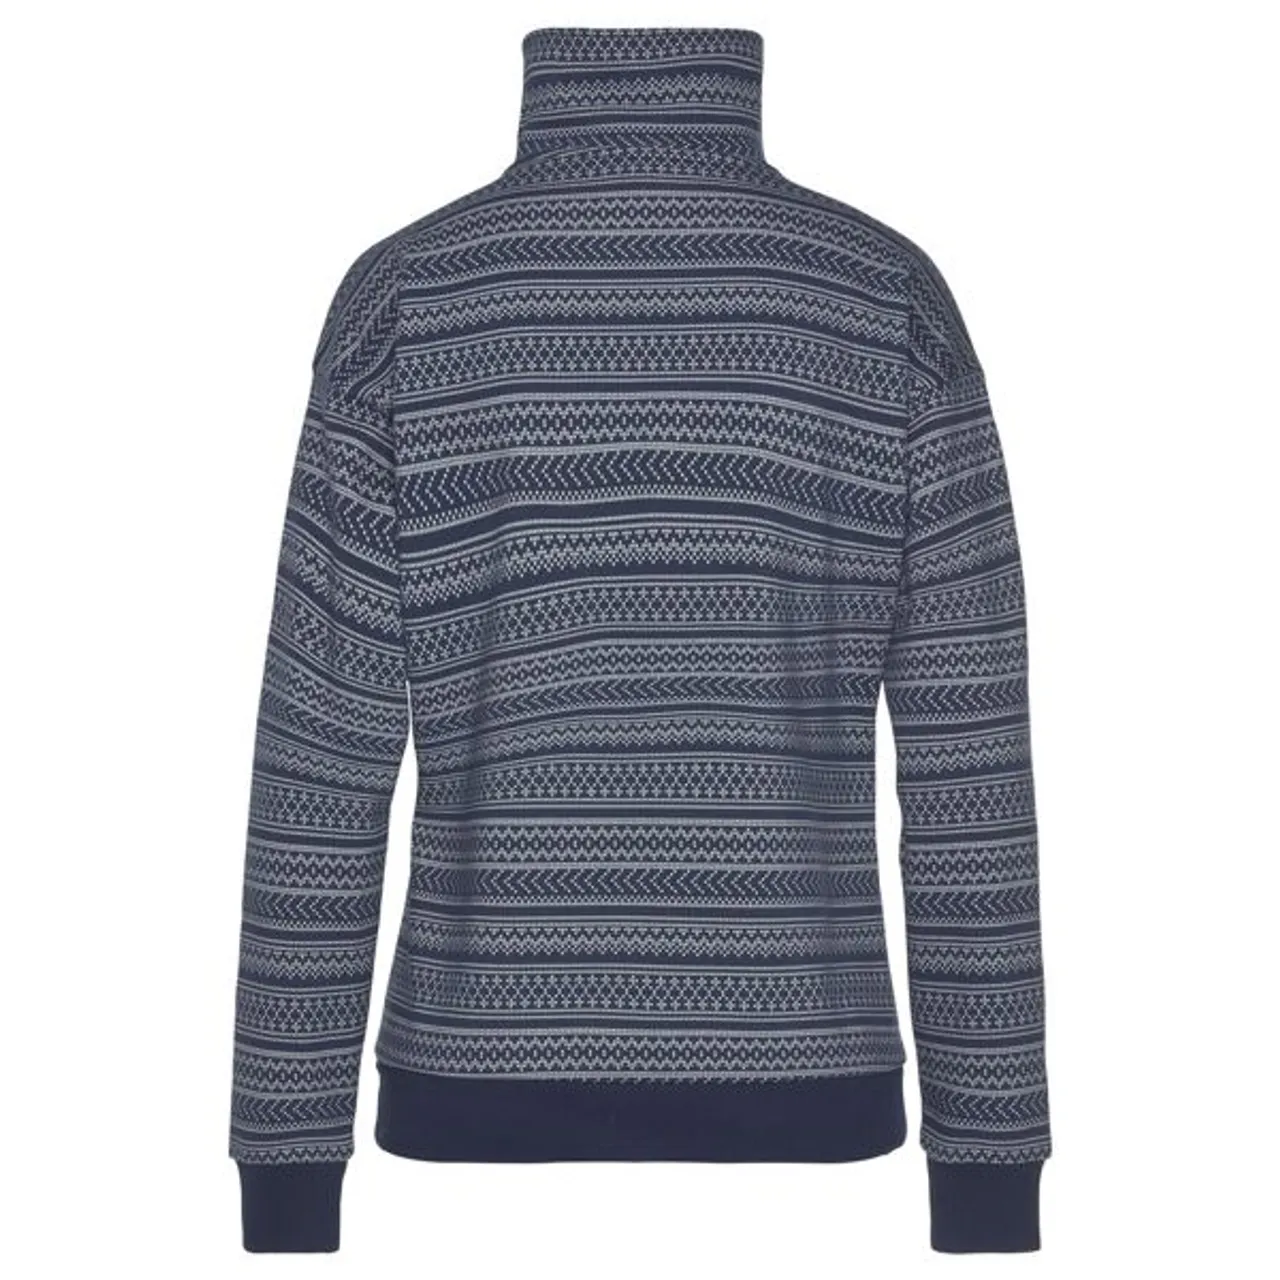 Sweatshirt S.OLIVER Gr. 32/34, blau (navy) Damen Sweatshirts Homewear Oberteile mit Norwegermuster, Loungeanzug